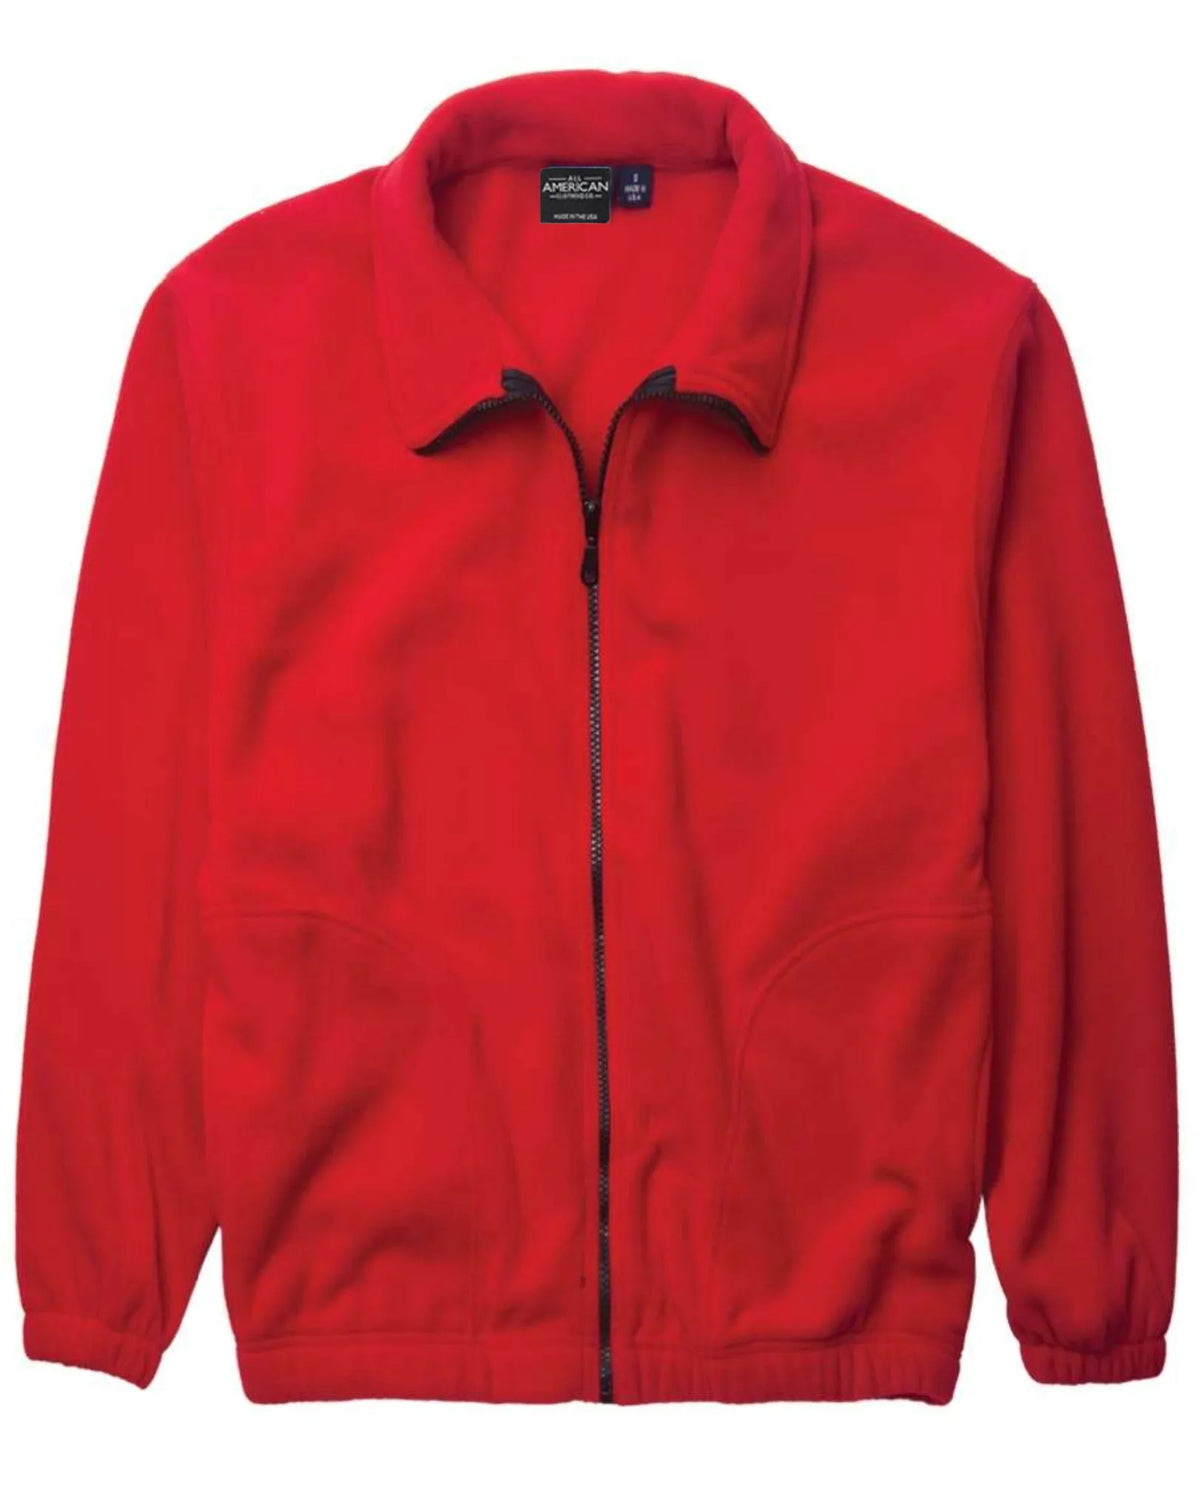 Men's Full Zip Fleece Jacket - All American Clothing Co